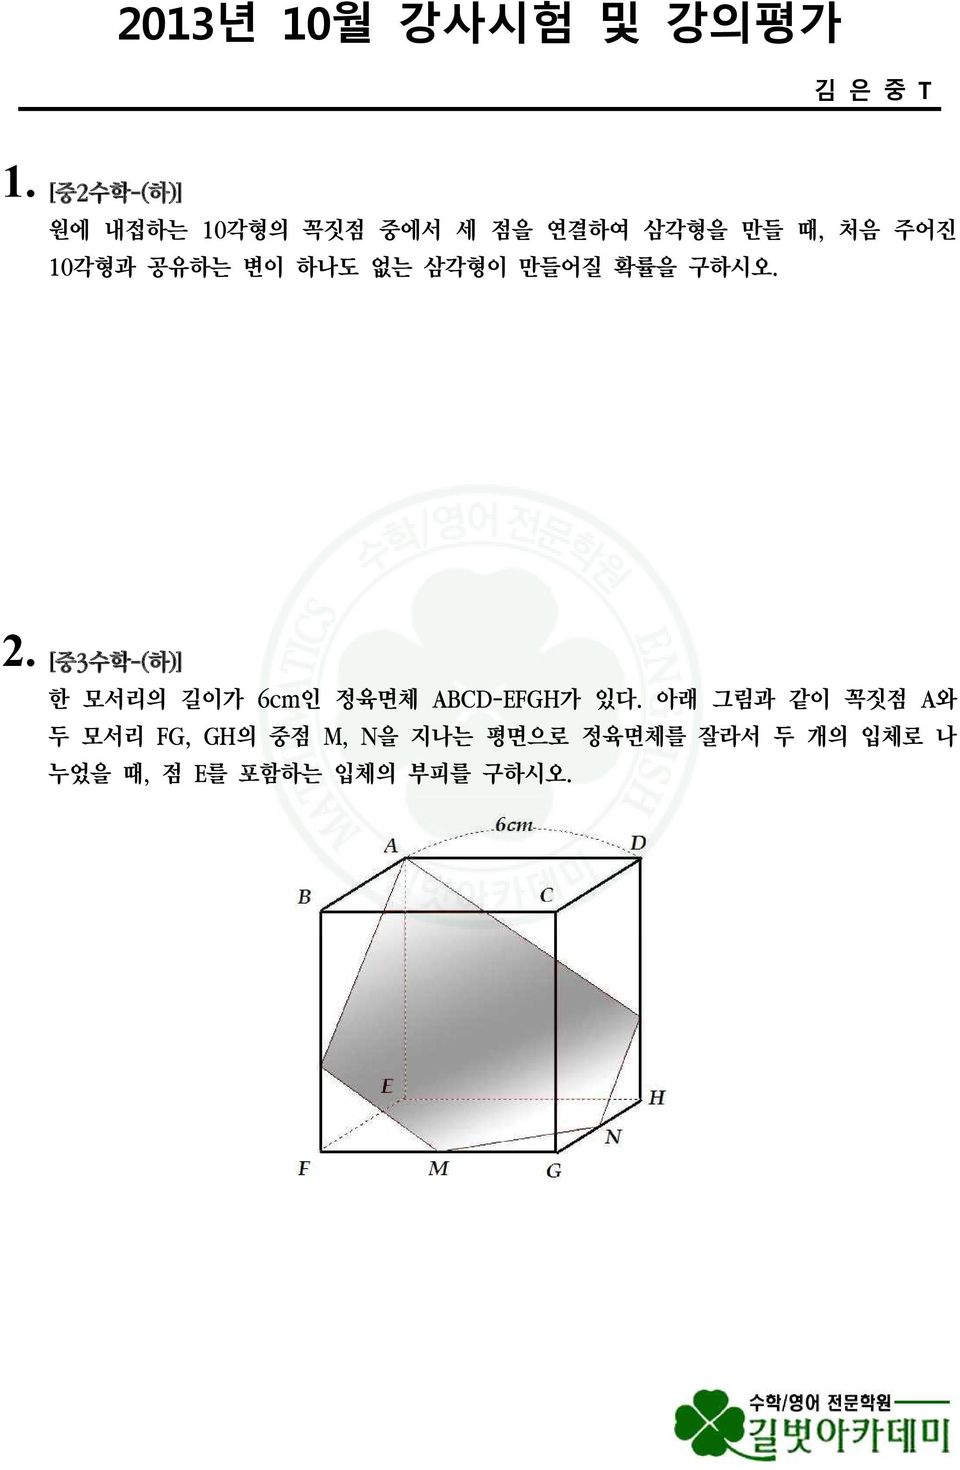 10각형과 공유하는 변이 하나도 없는 삼각형이 만들어질 확률을 구하시오. 2.